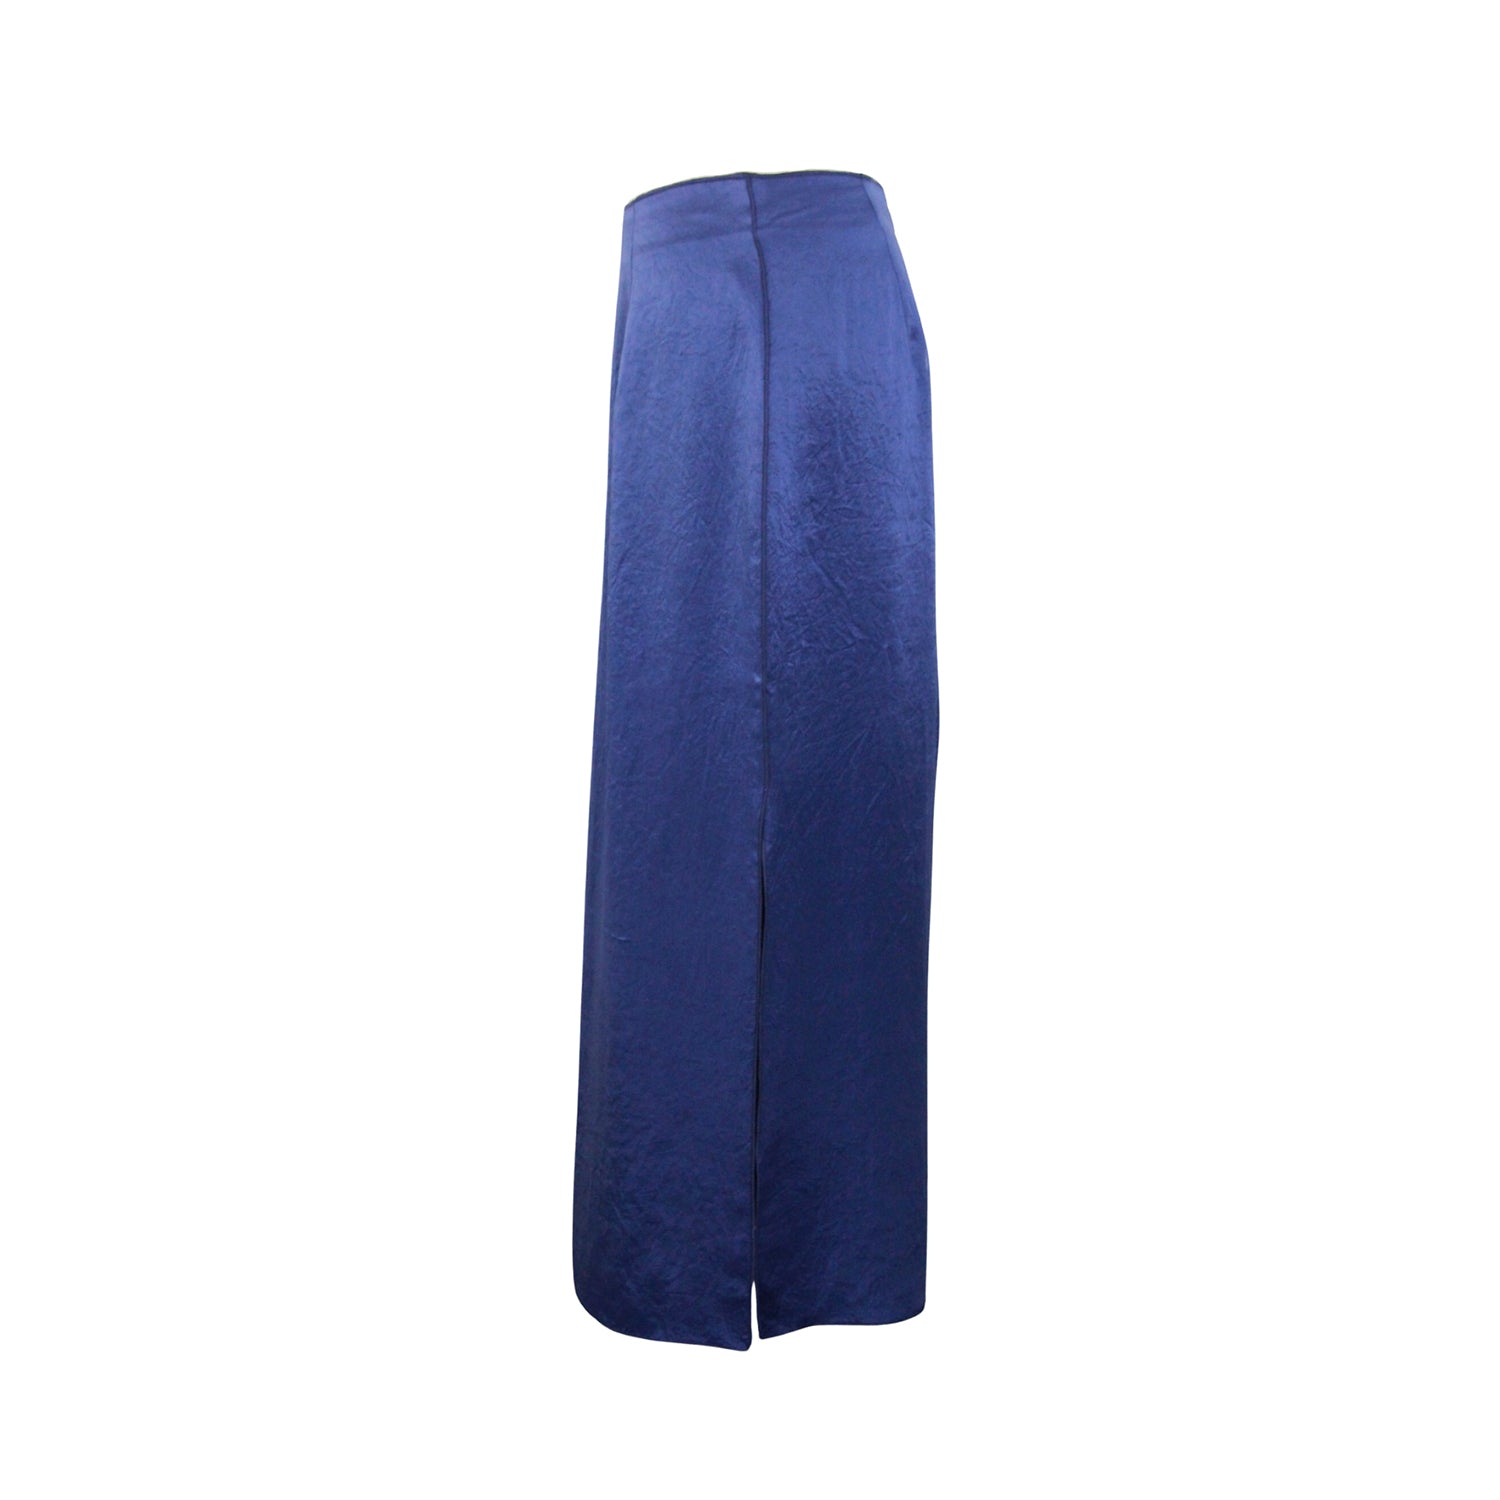 Premium Indigo Blue Skirt by Gosia Orlowska